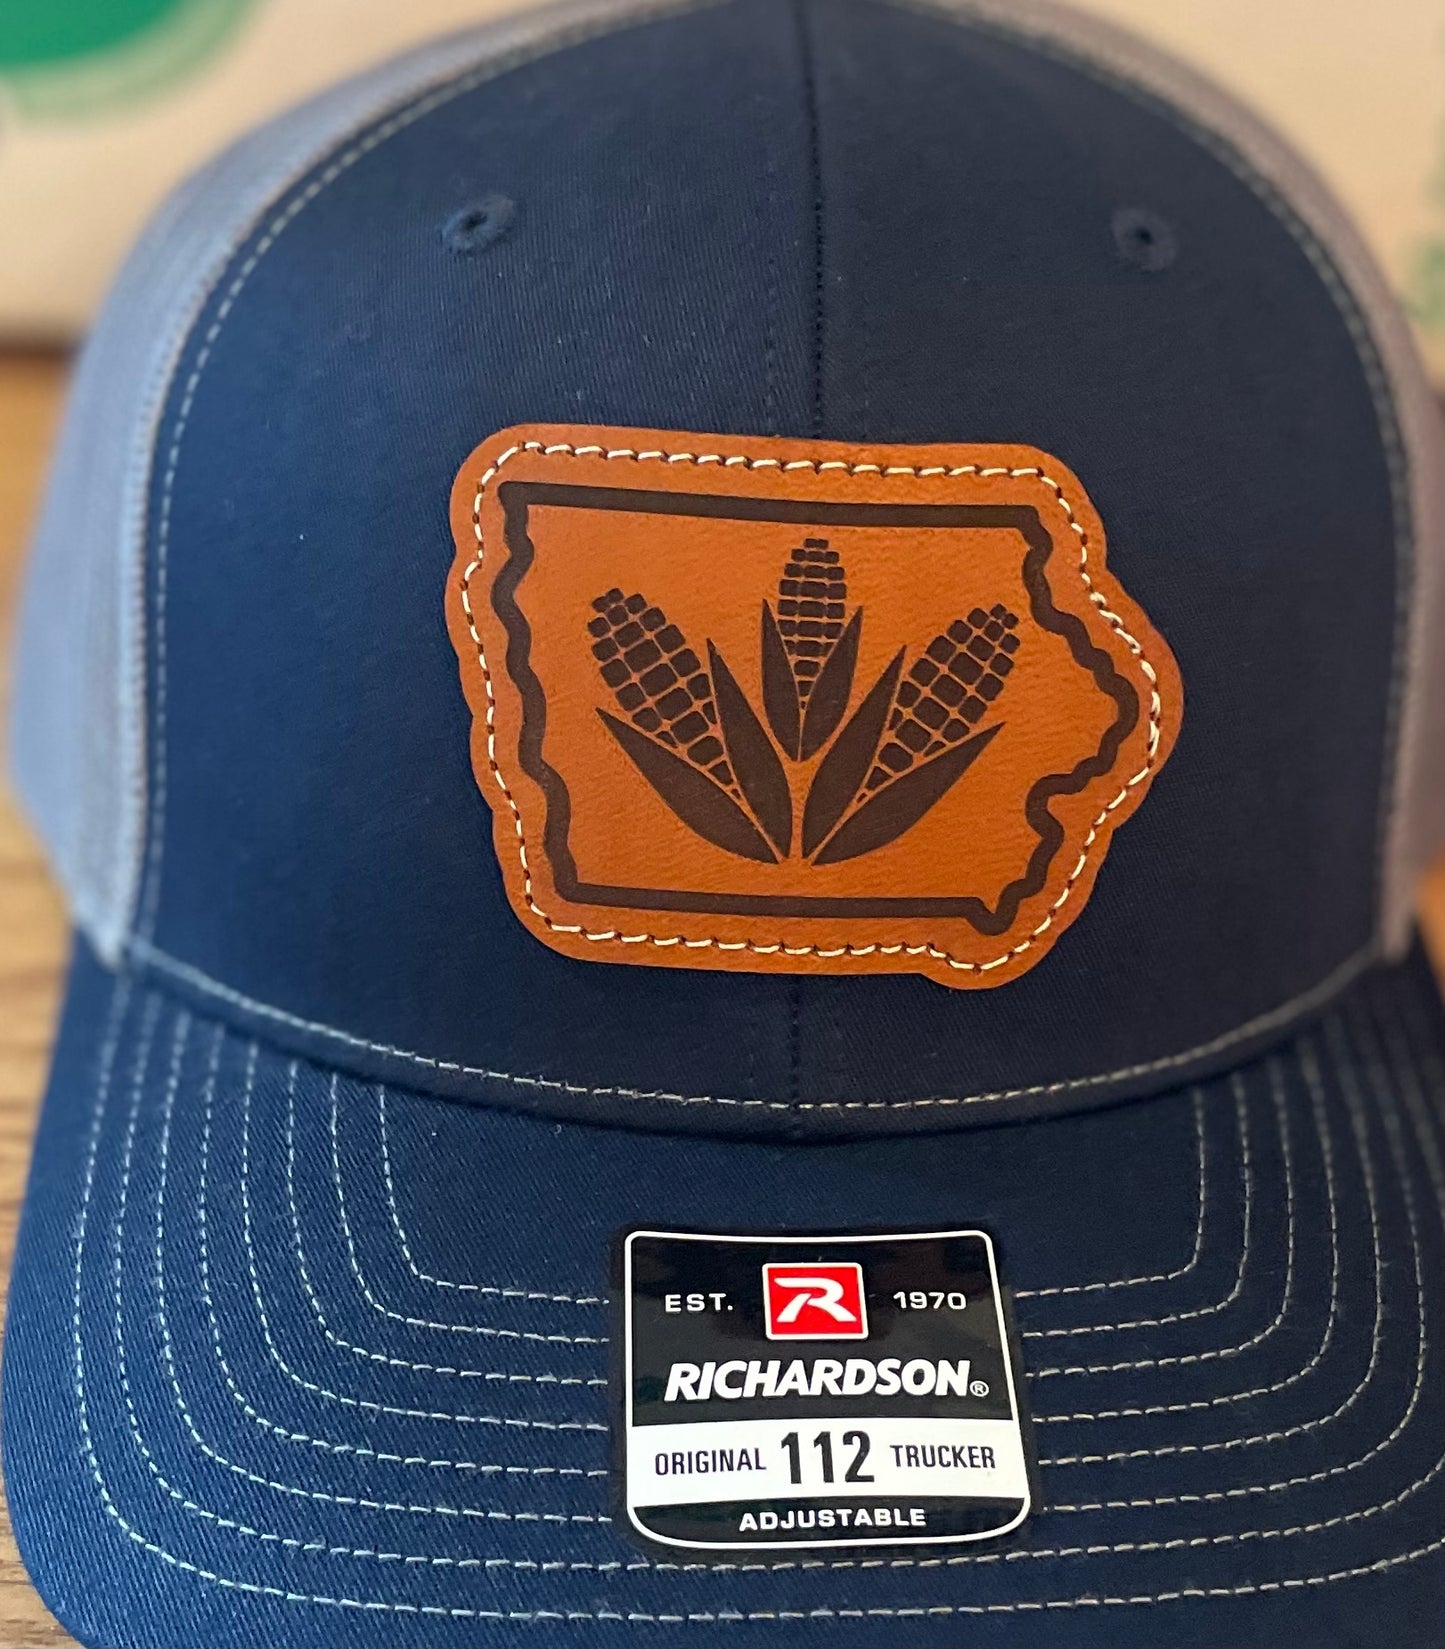 Iowa Corn Hat